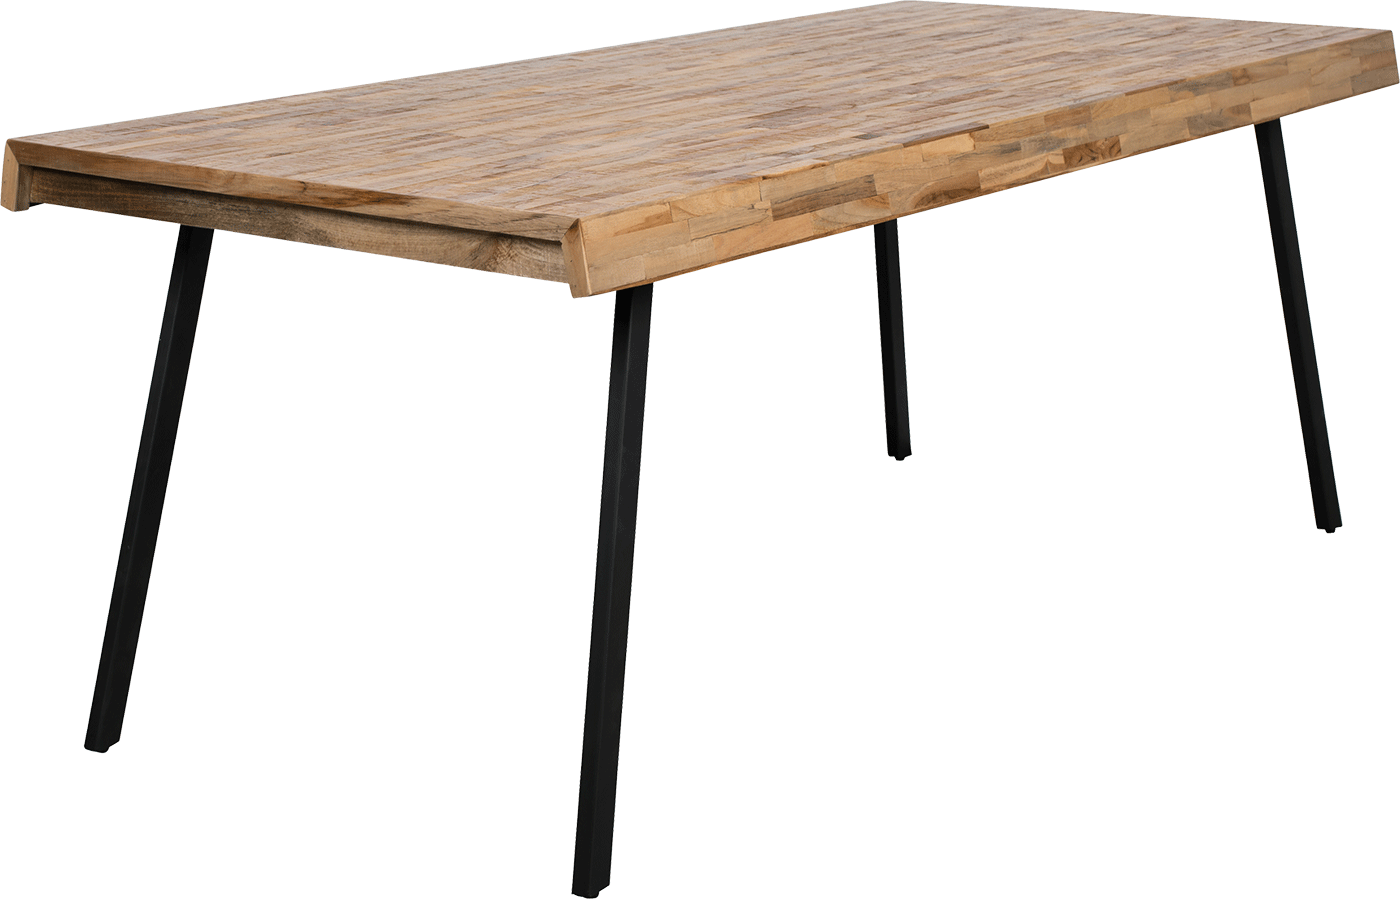 WL-Living Suri jedálenský stôl - Drevo, 200 x 90 cm